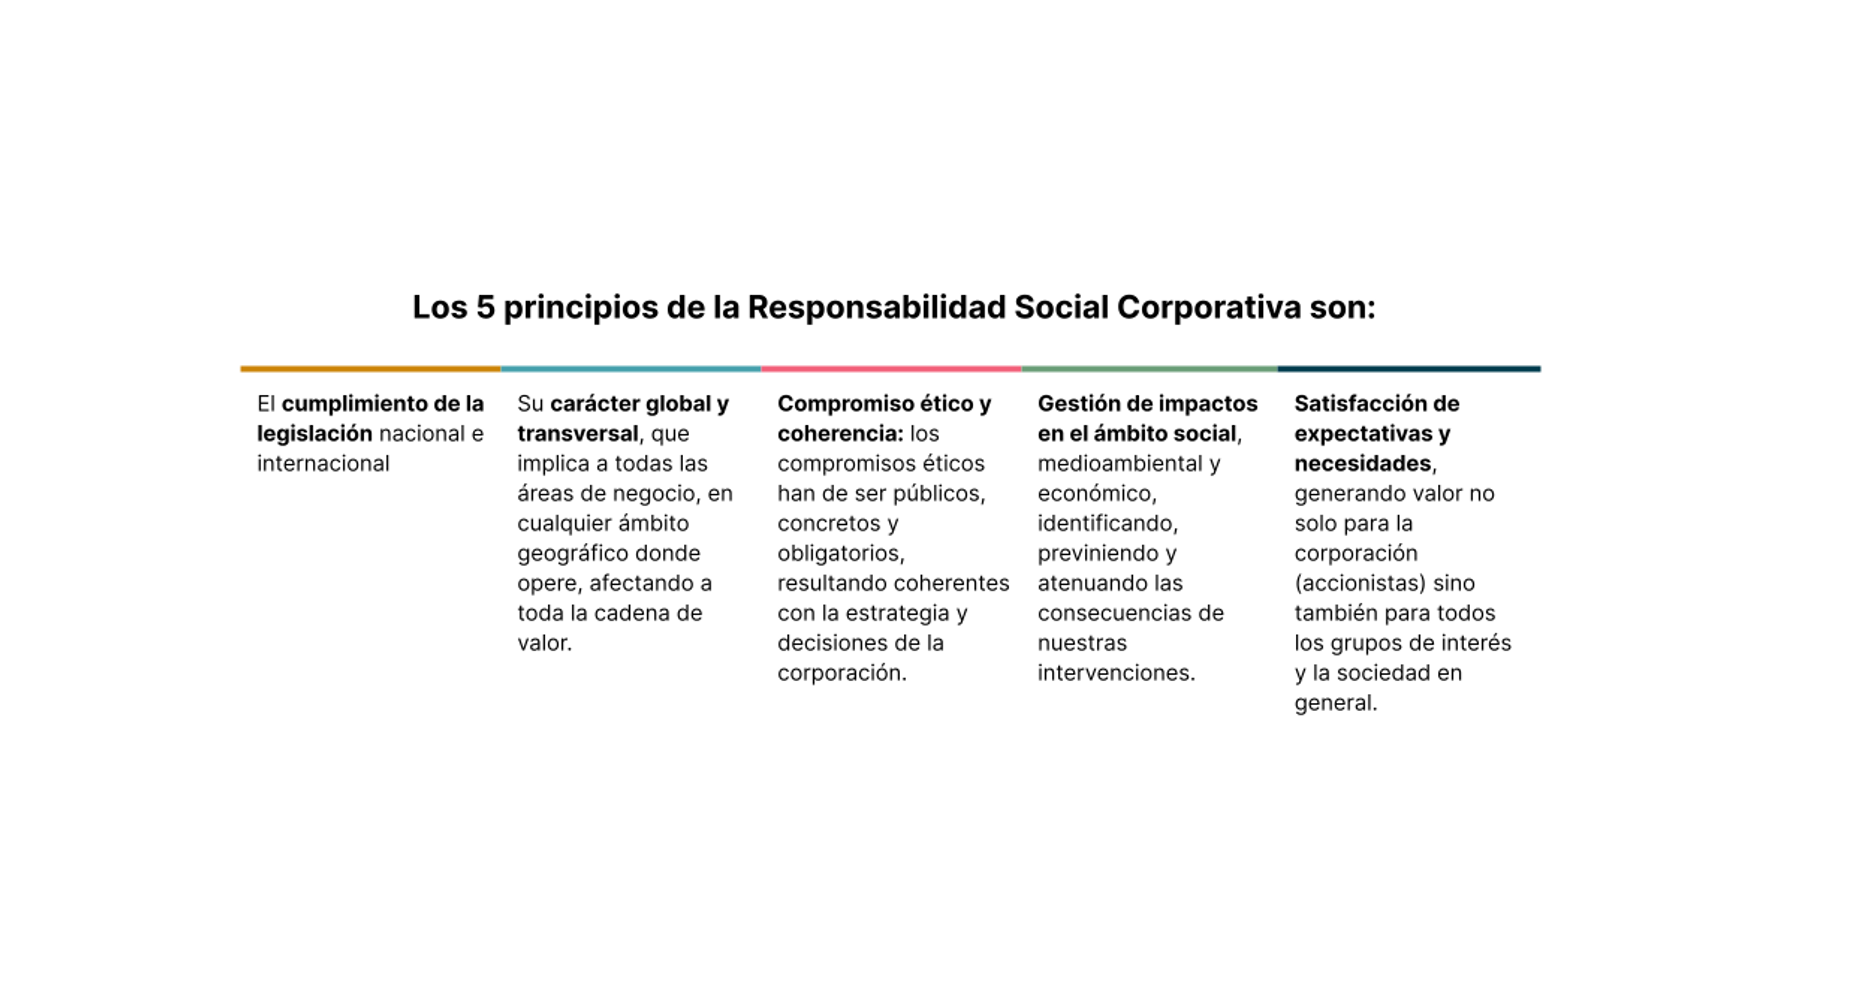 Los 5 principios de la Responsabilidad Social Corporativa